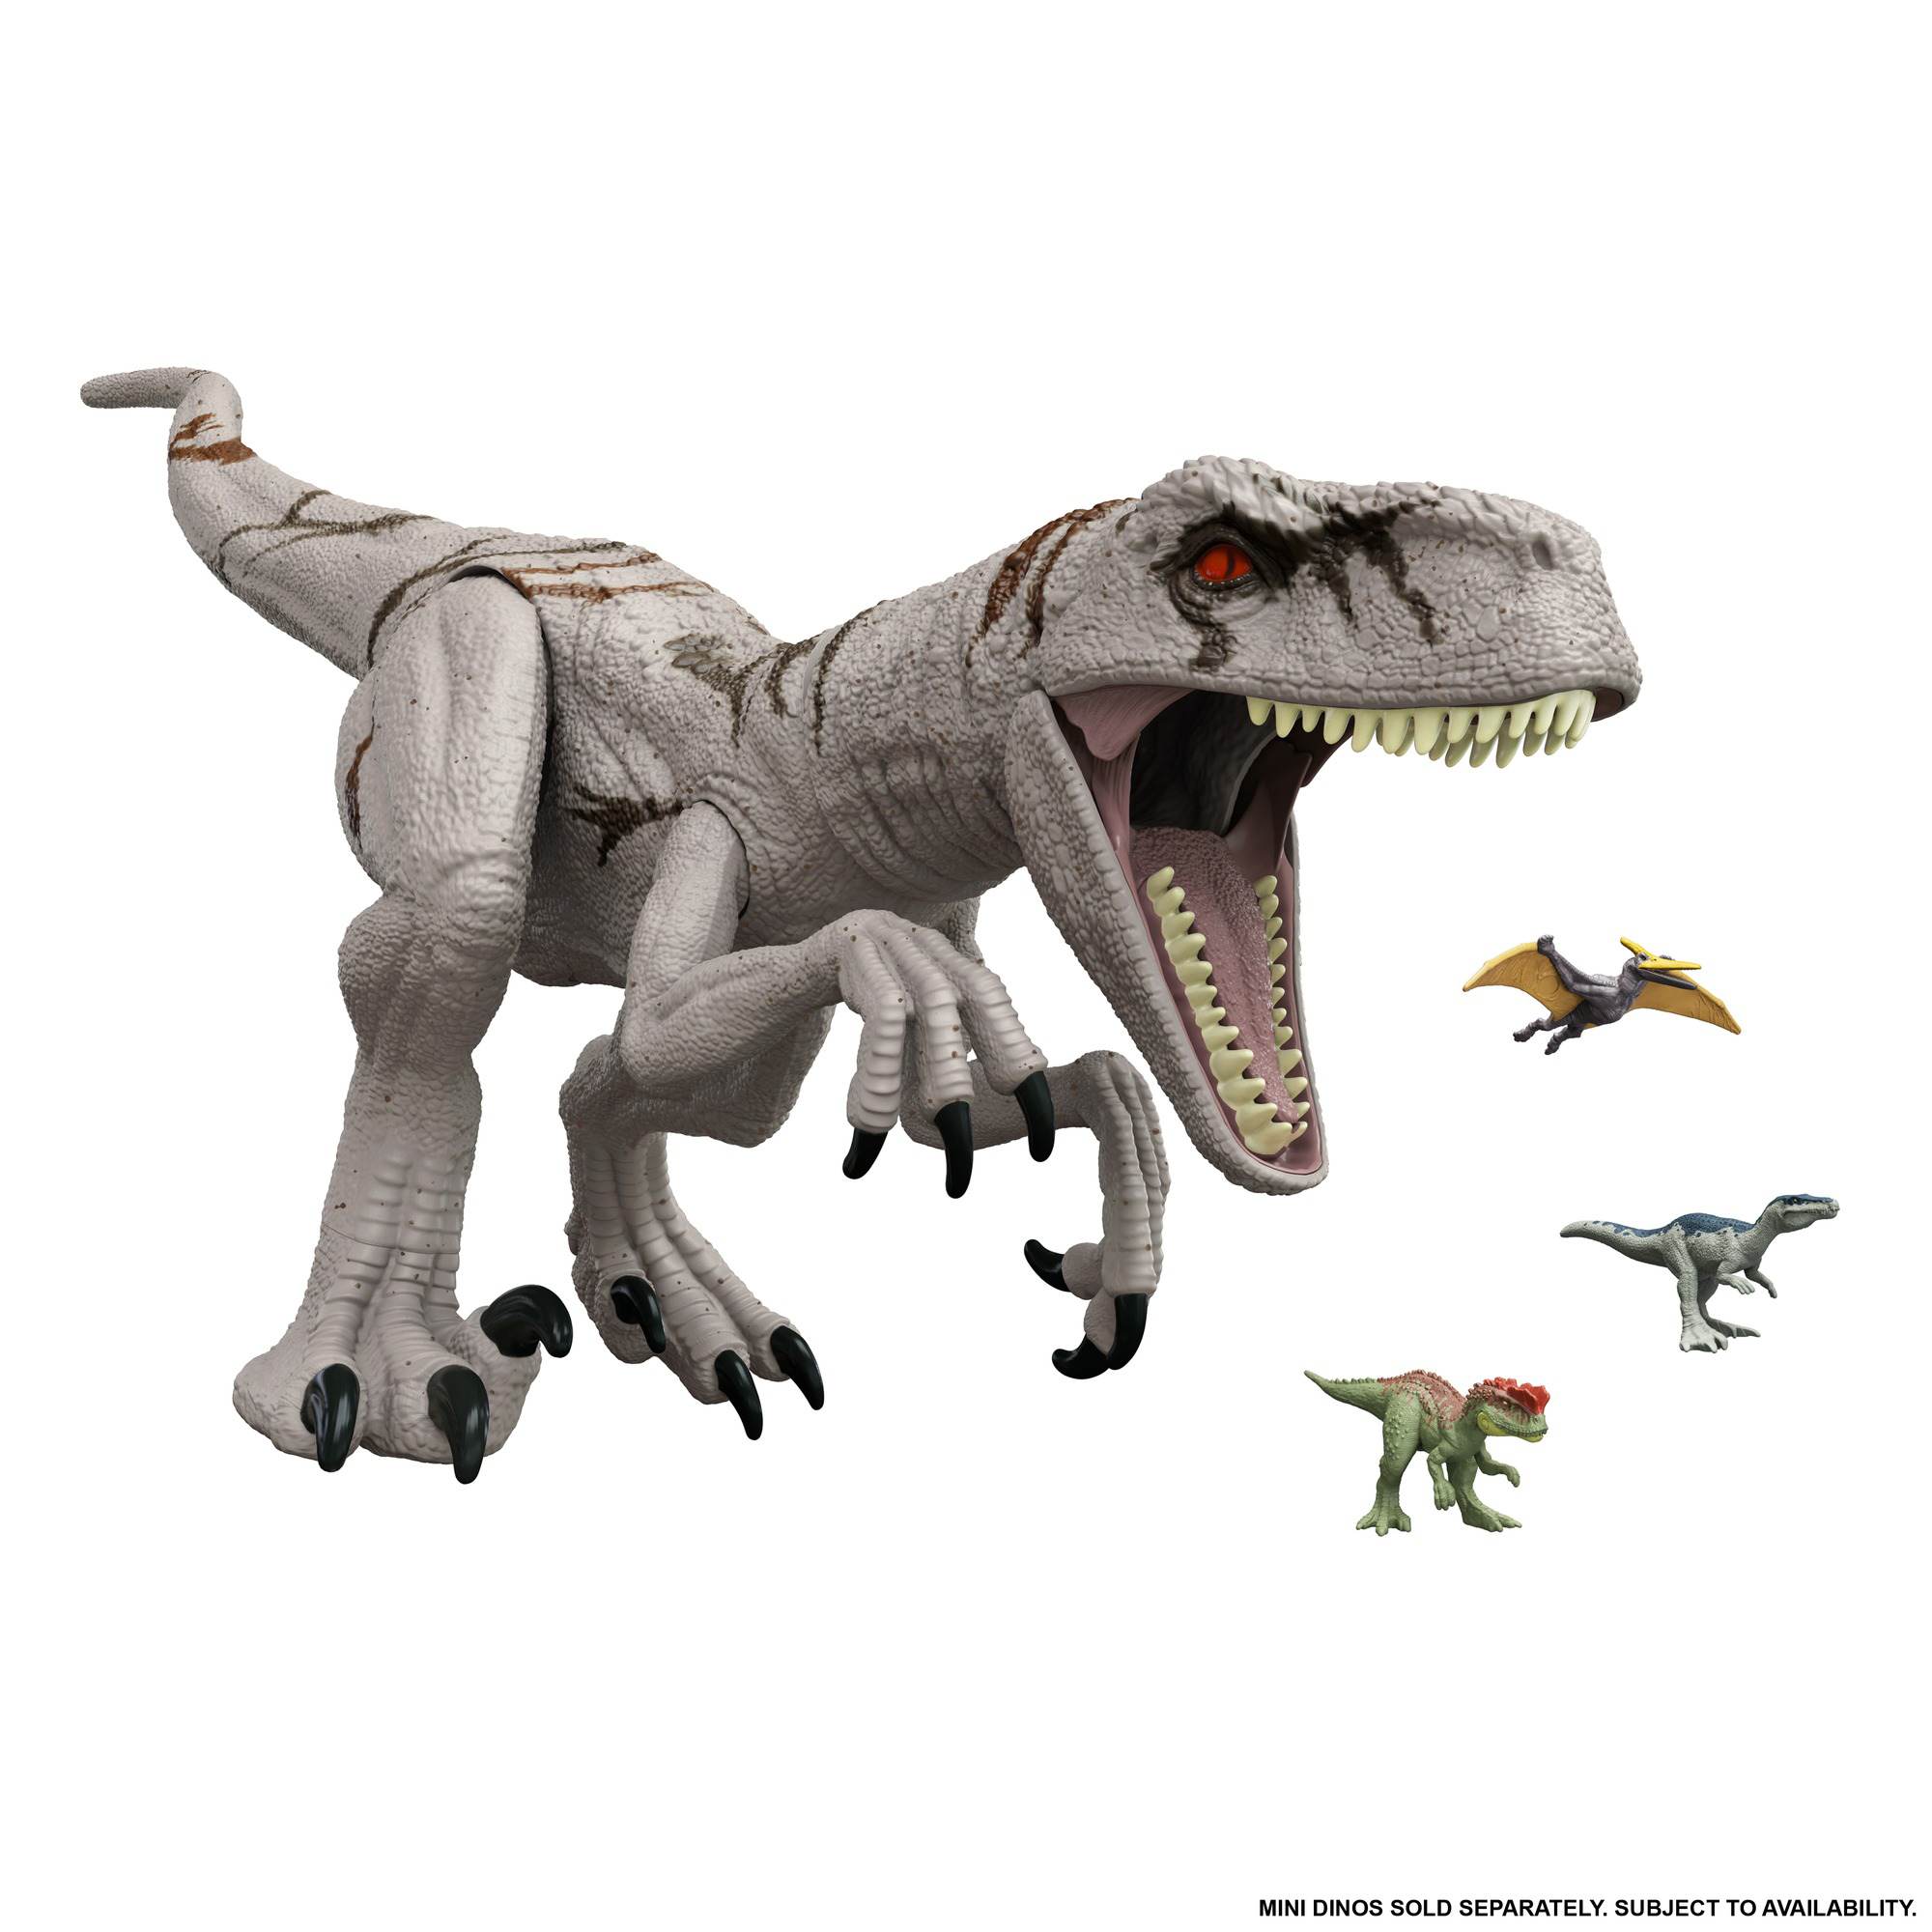 I giocattoli di Jurassic World rivelano l'esistenza di un nuovo ibrido